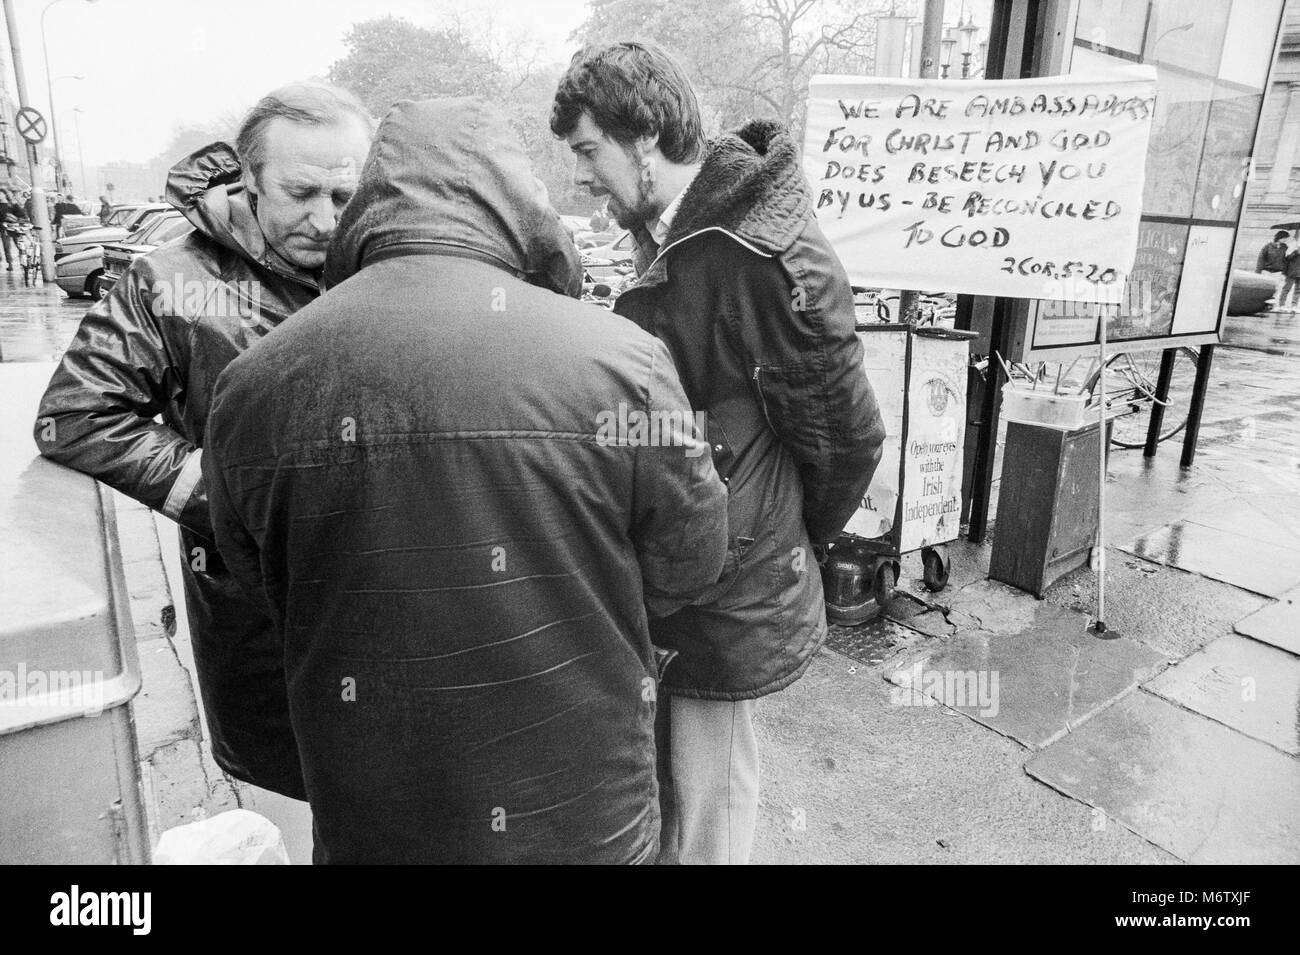 Trois hommes de prêcher dans la rue à St Stephens Green, Dublin City Centre, l'Irlande, de photographie d'archives Avril 1988 Banque D'Images